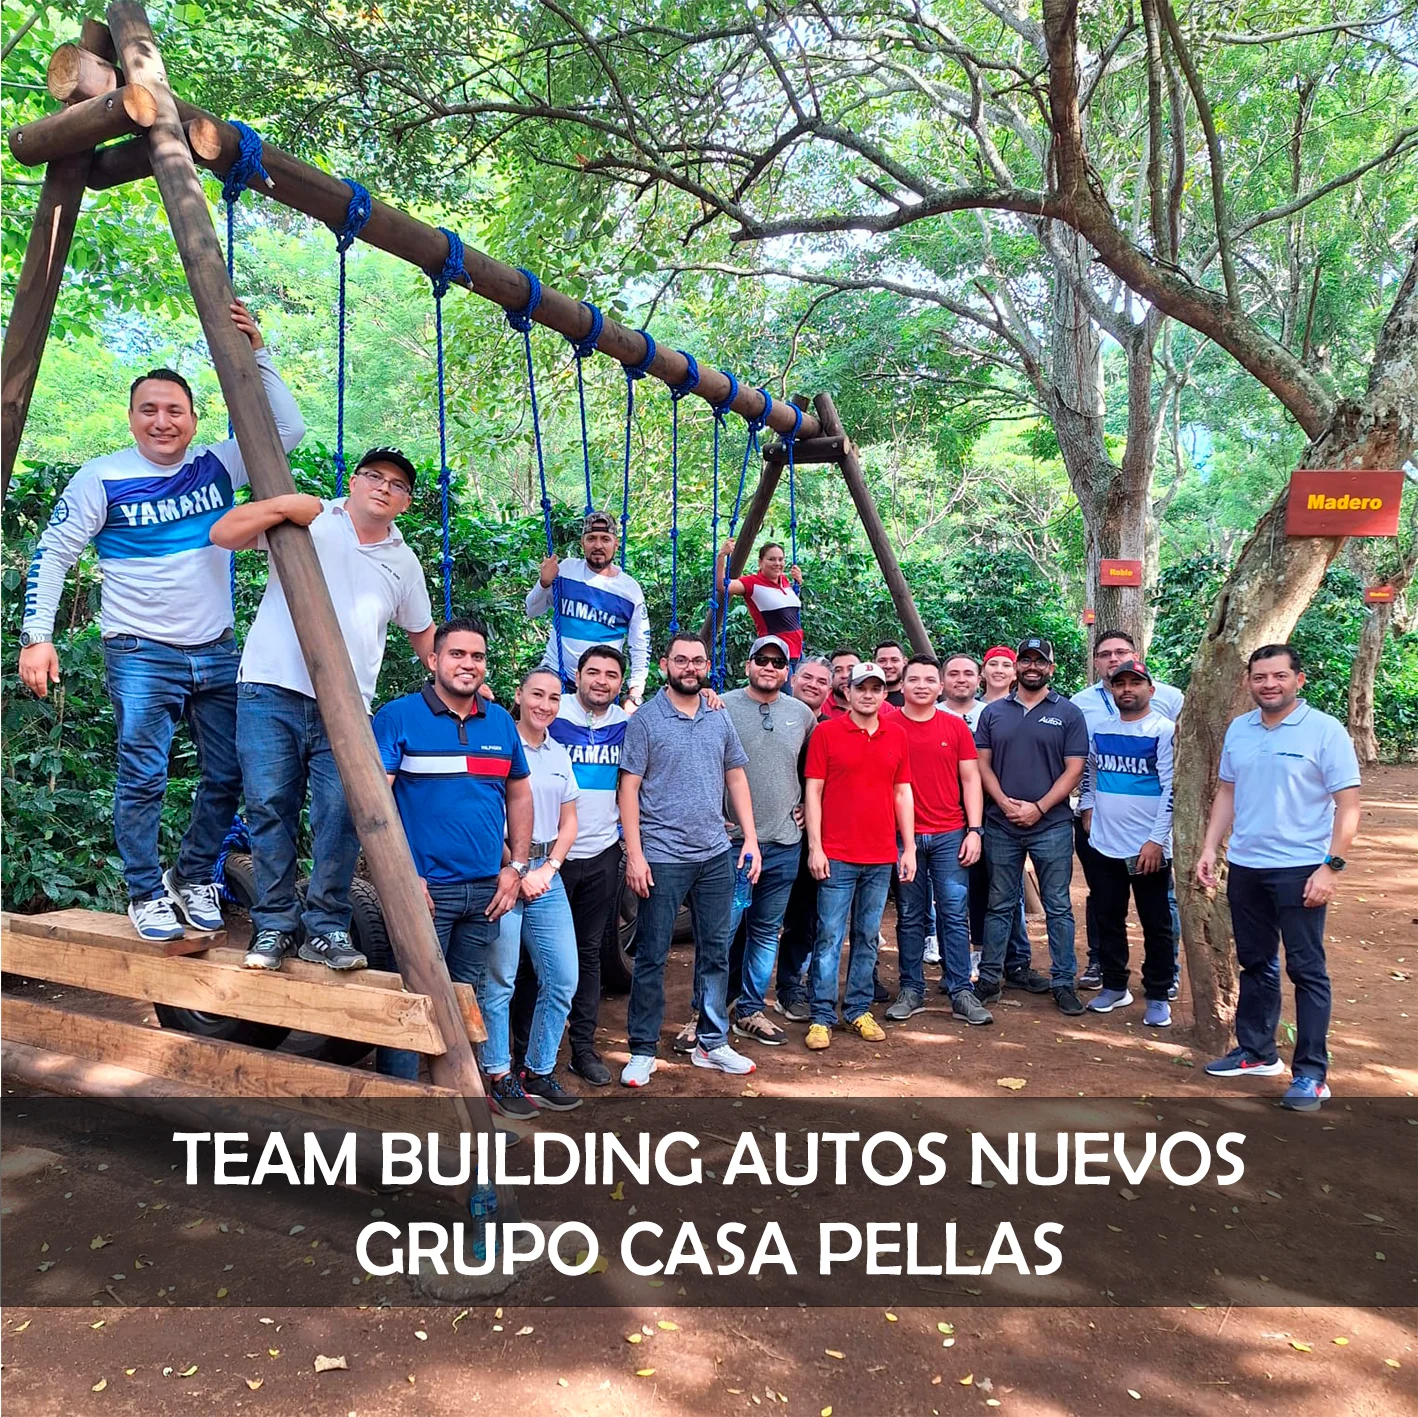 TEAM BUILDING AUTOS NUEVOS CASA PELLAS